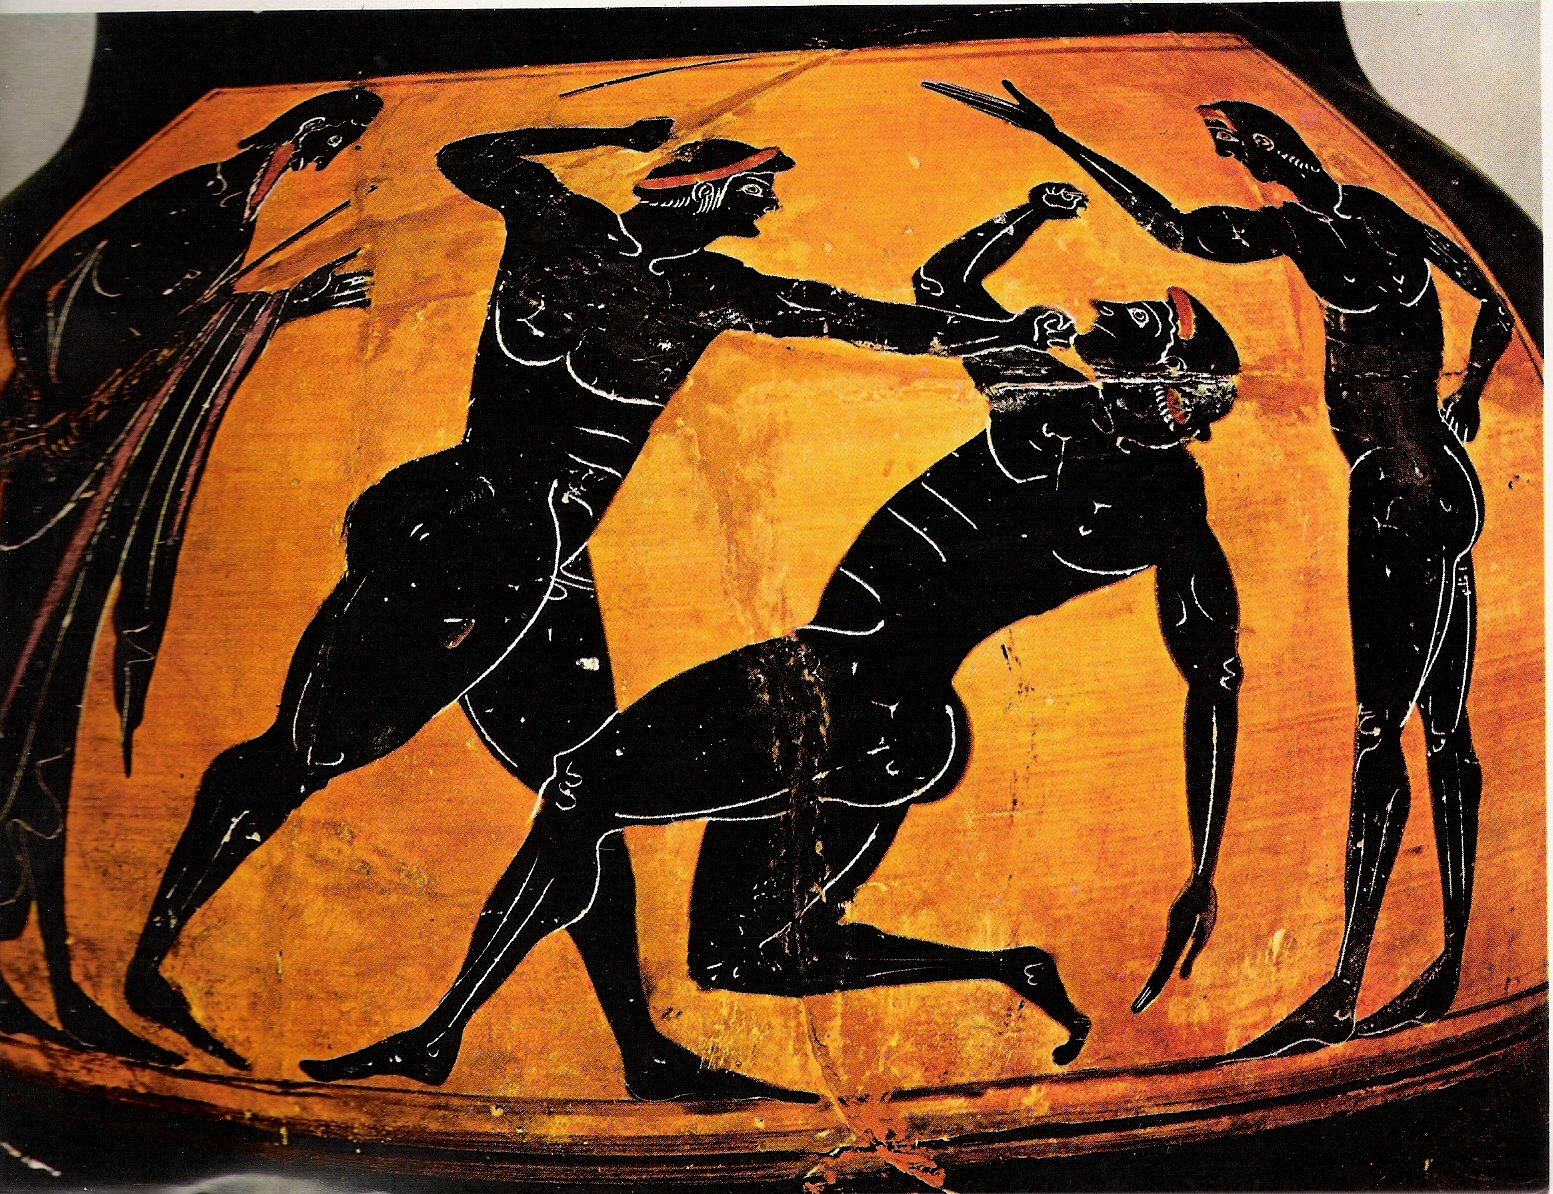 Игры в греции в древности